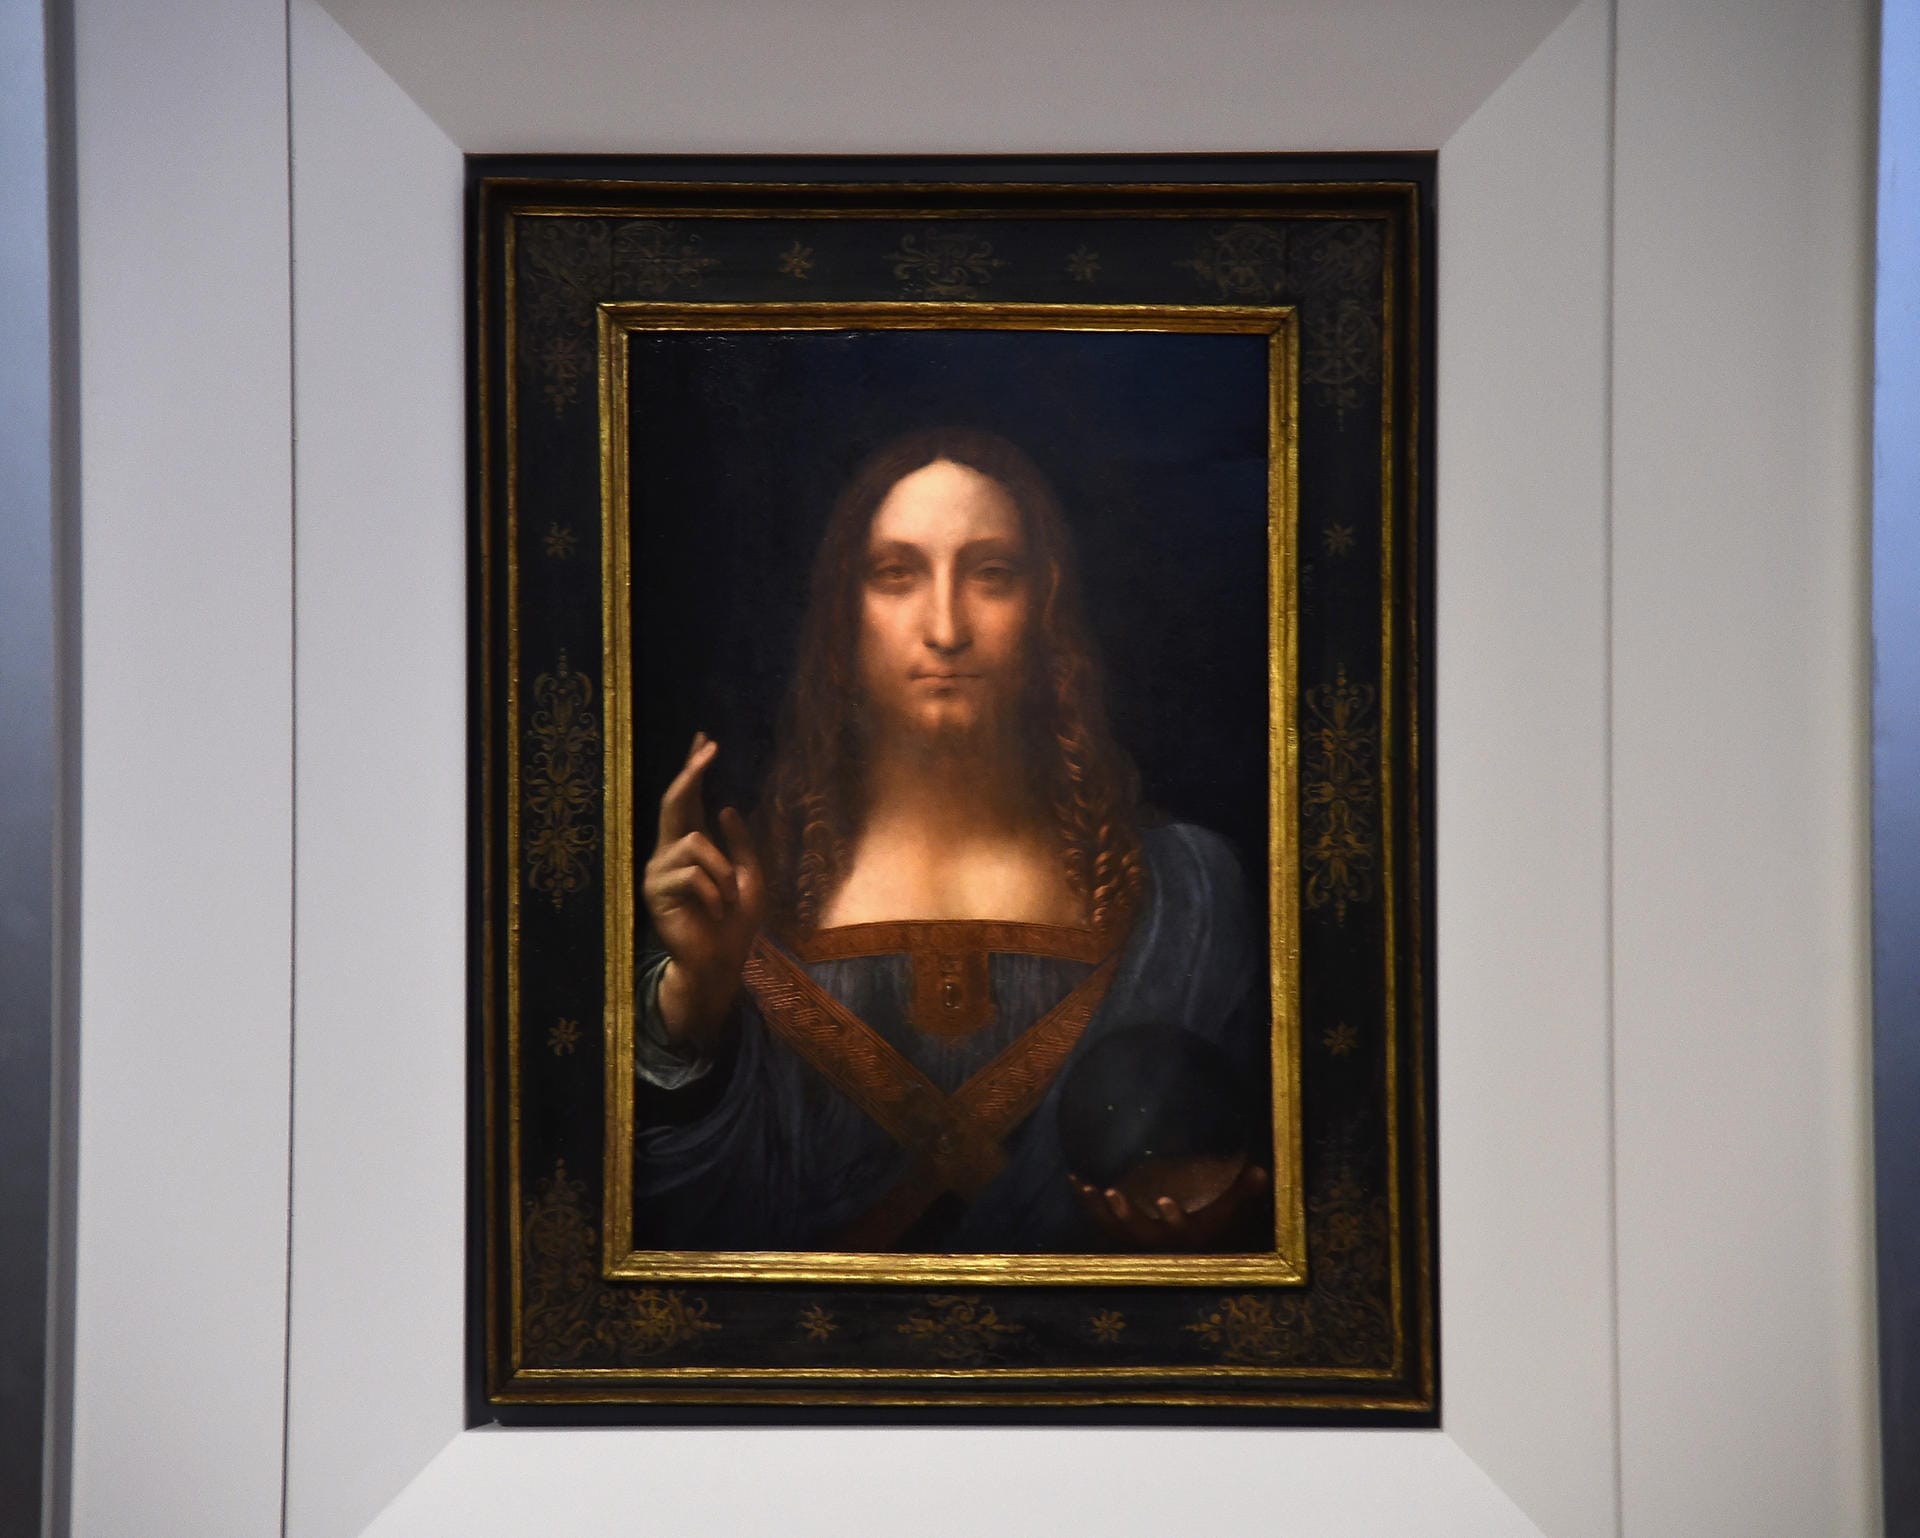 Leonardo da Vinci (Platz 1): Das Ölgemälde "Salvator Mundi" (um 1500) wurde im Jahr 2017 für die Rekordsumme von 450,3 Millionen Dollar über das Auktionshaus Christie's an Mohammed bin Salman verkauft.